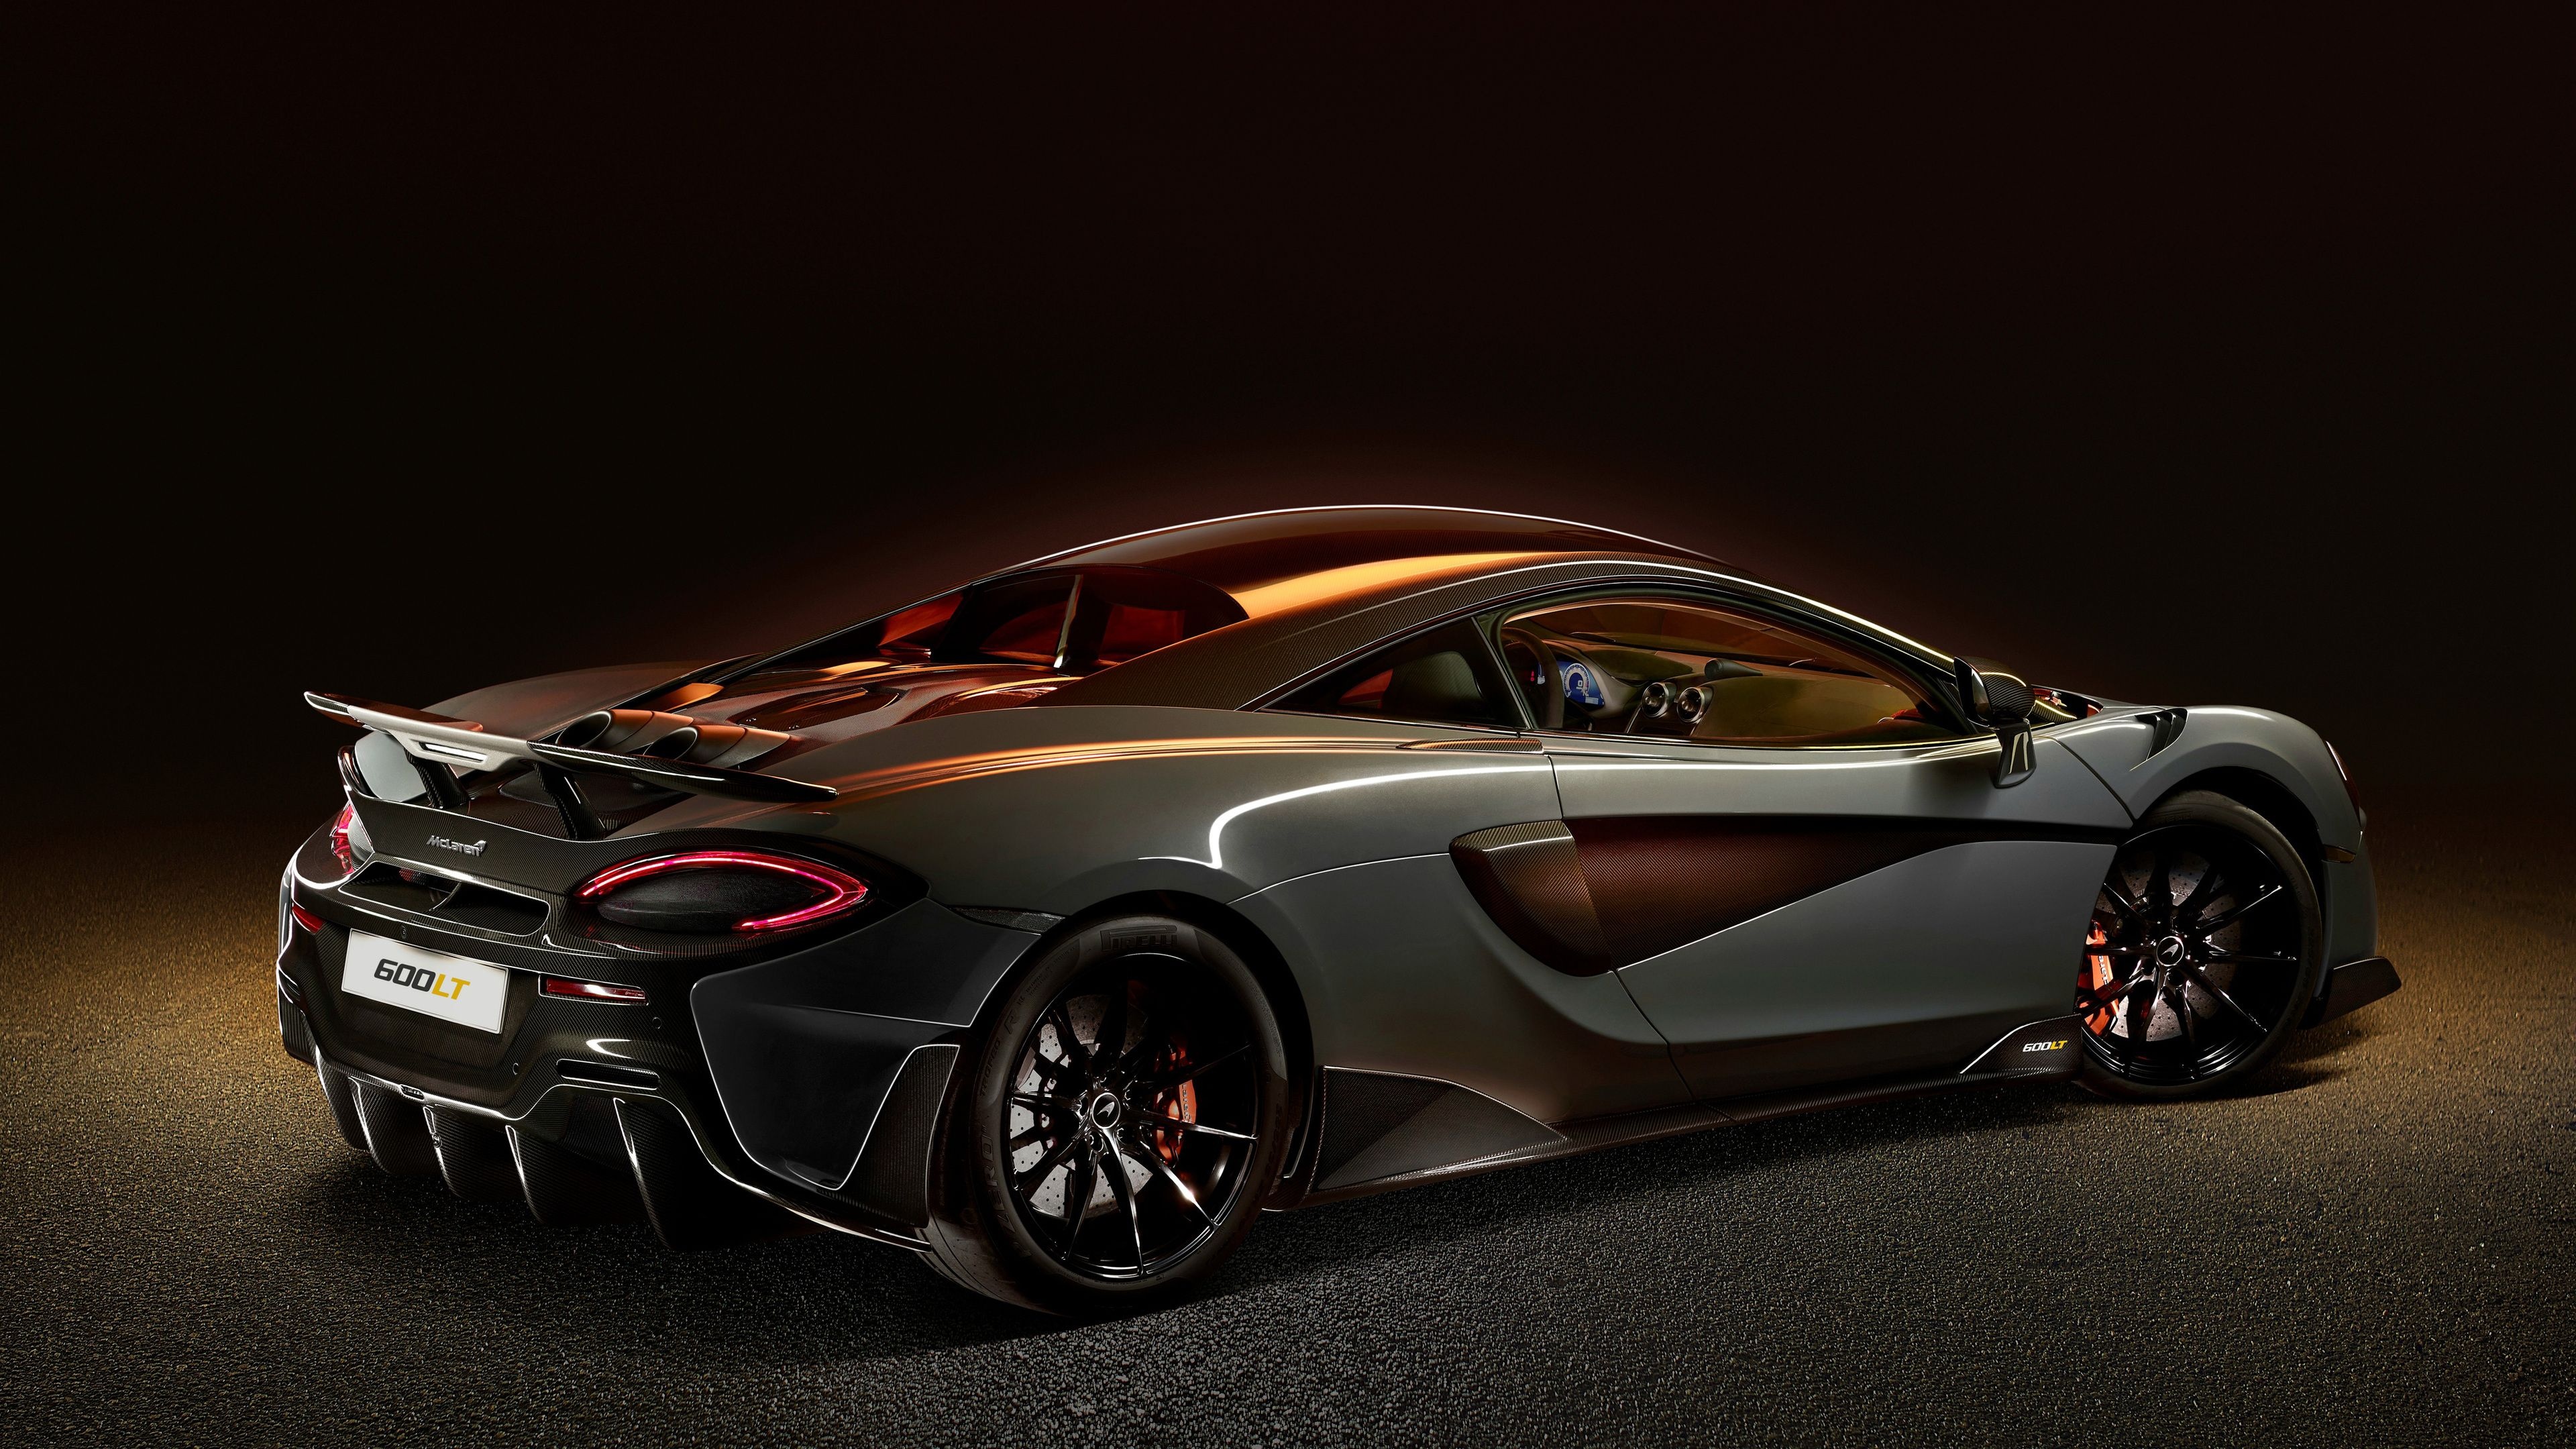 McLaren 600LT, Stunning rear view, British engineering, Luxury sports car, 3840x2160 4K Desktop